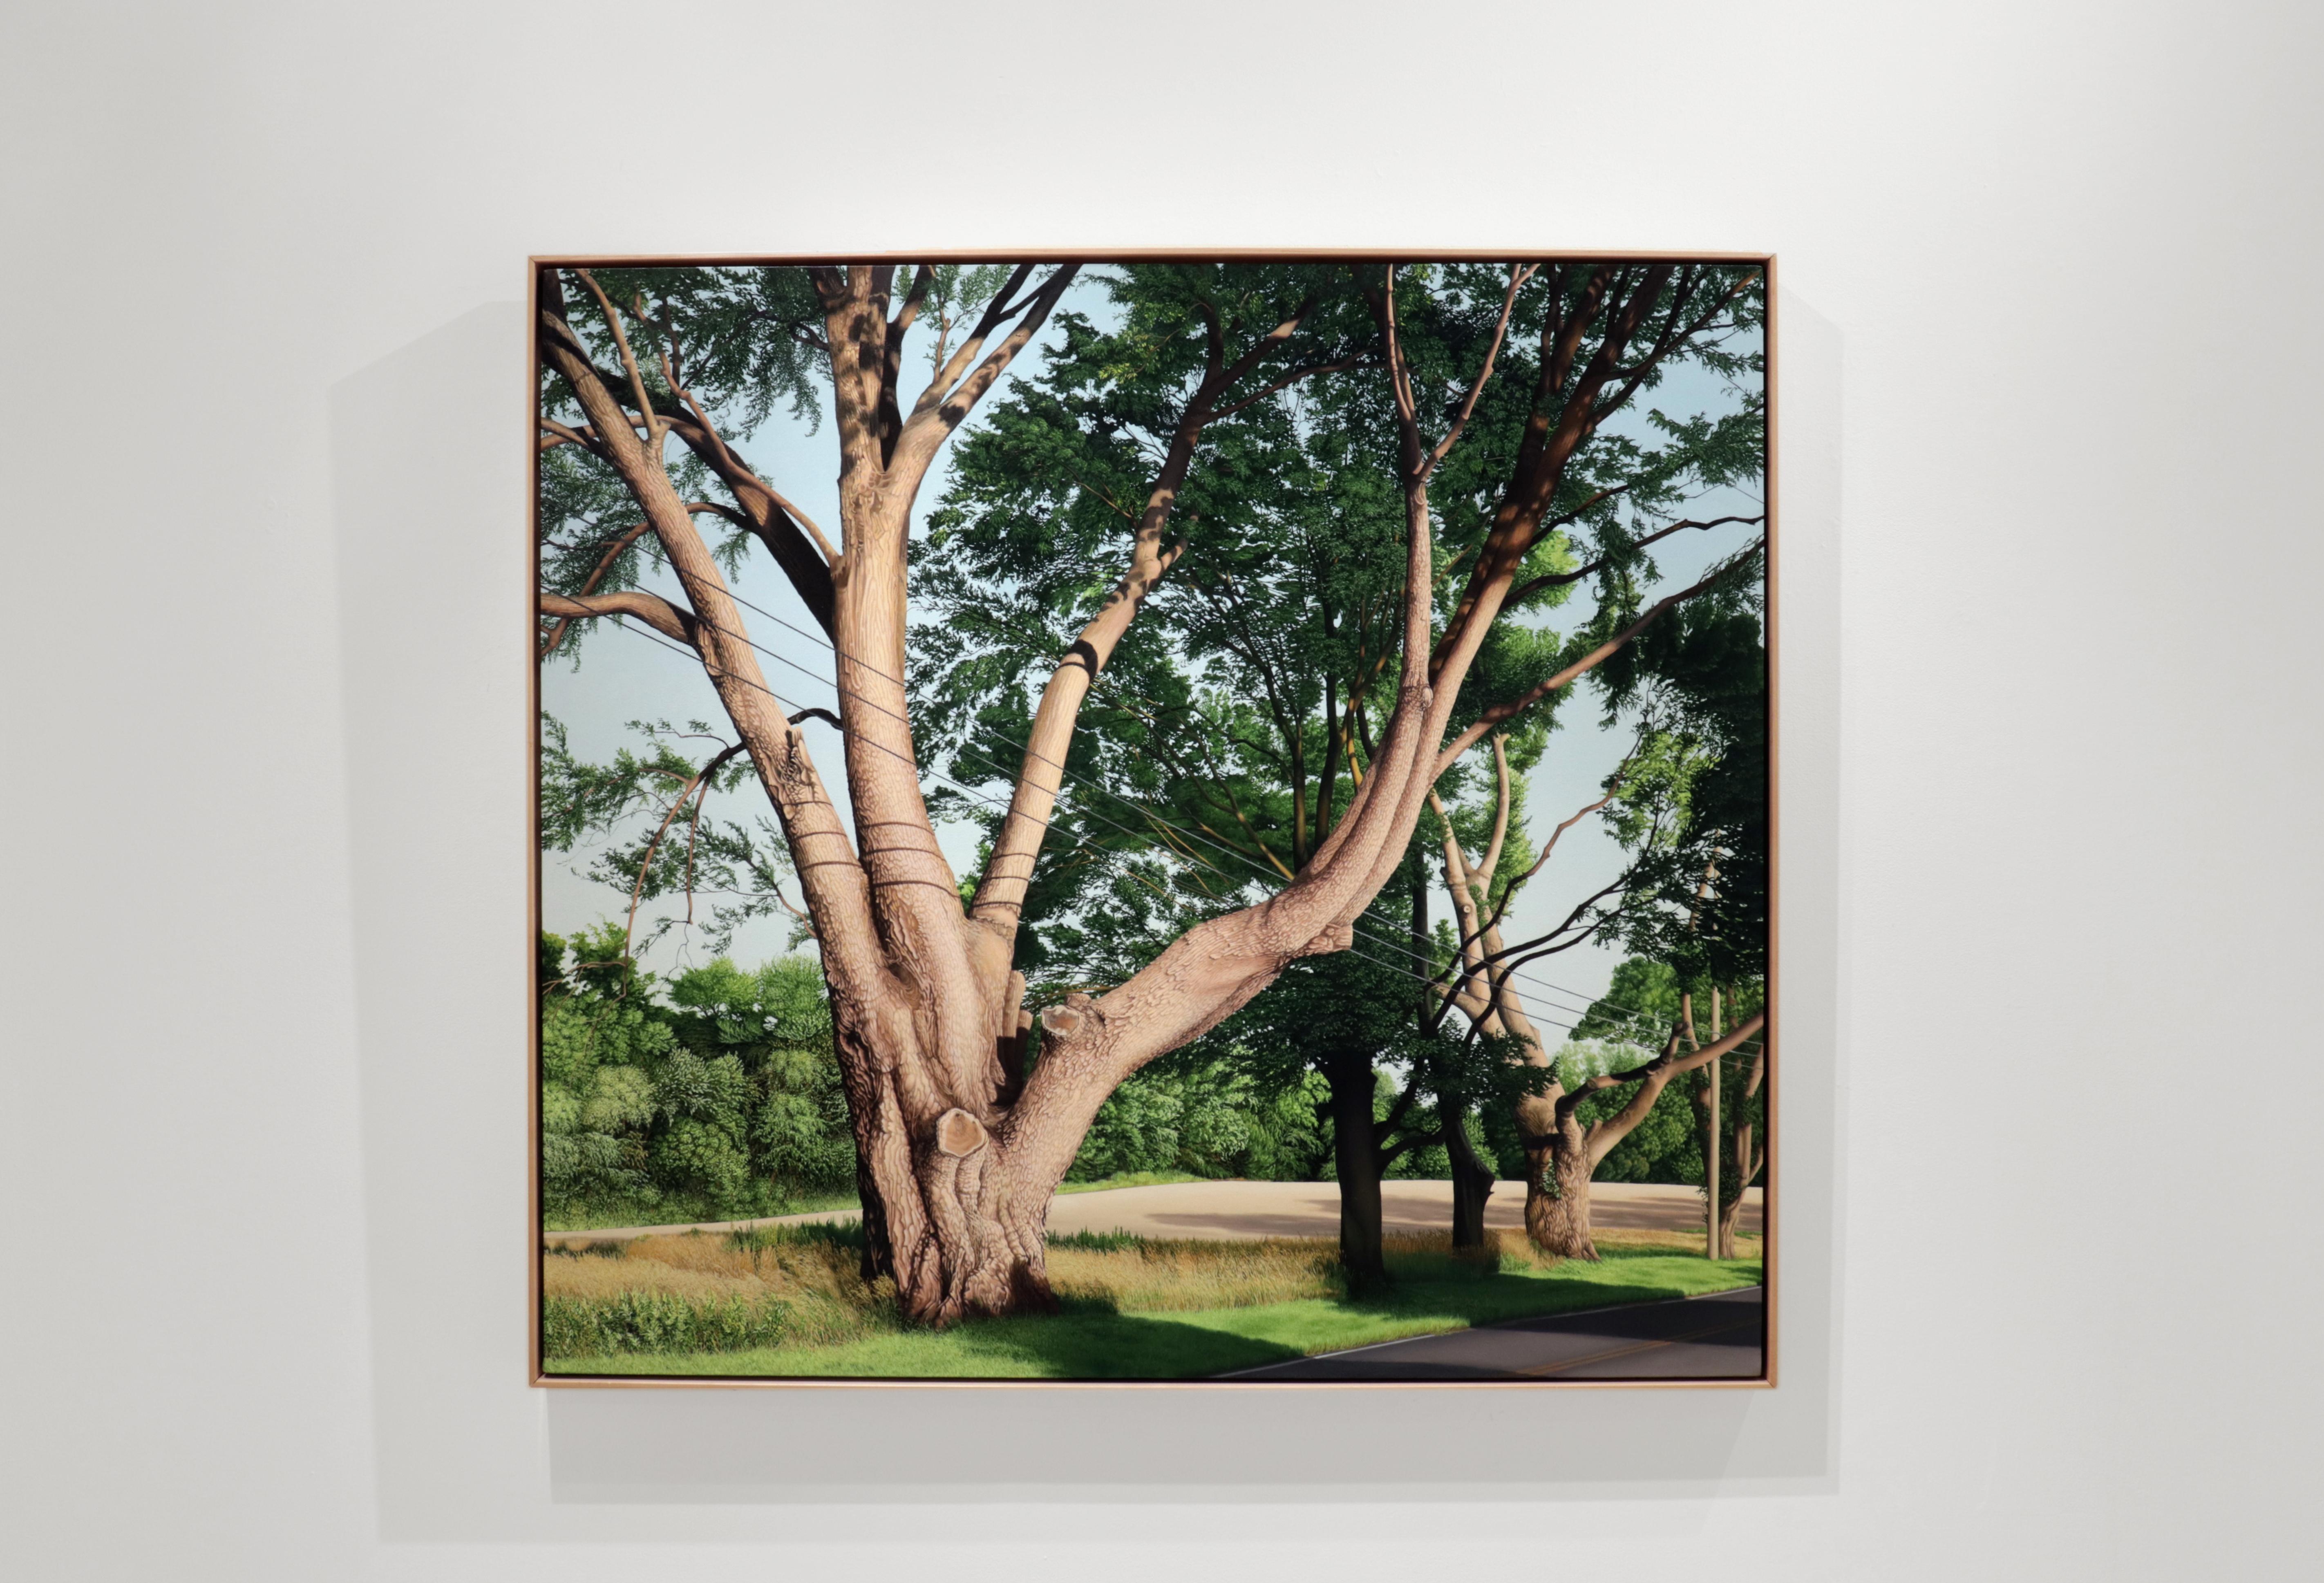 TRIMMED TREES, Fotorealismus, Baumlinie, Baumrinde, grüne Landschaft, Blattwerk – Painting von Anita Mazzucca